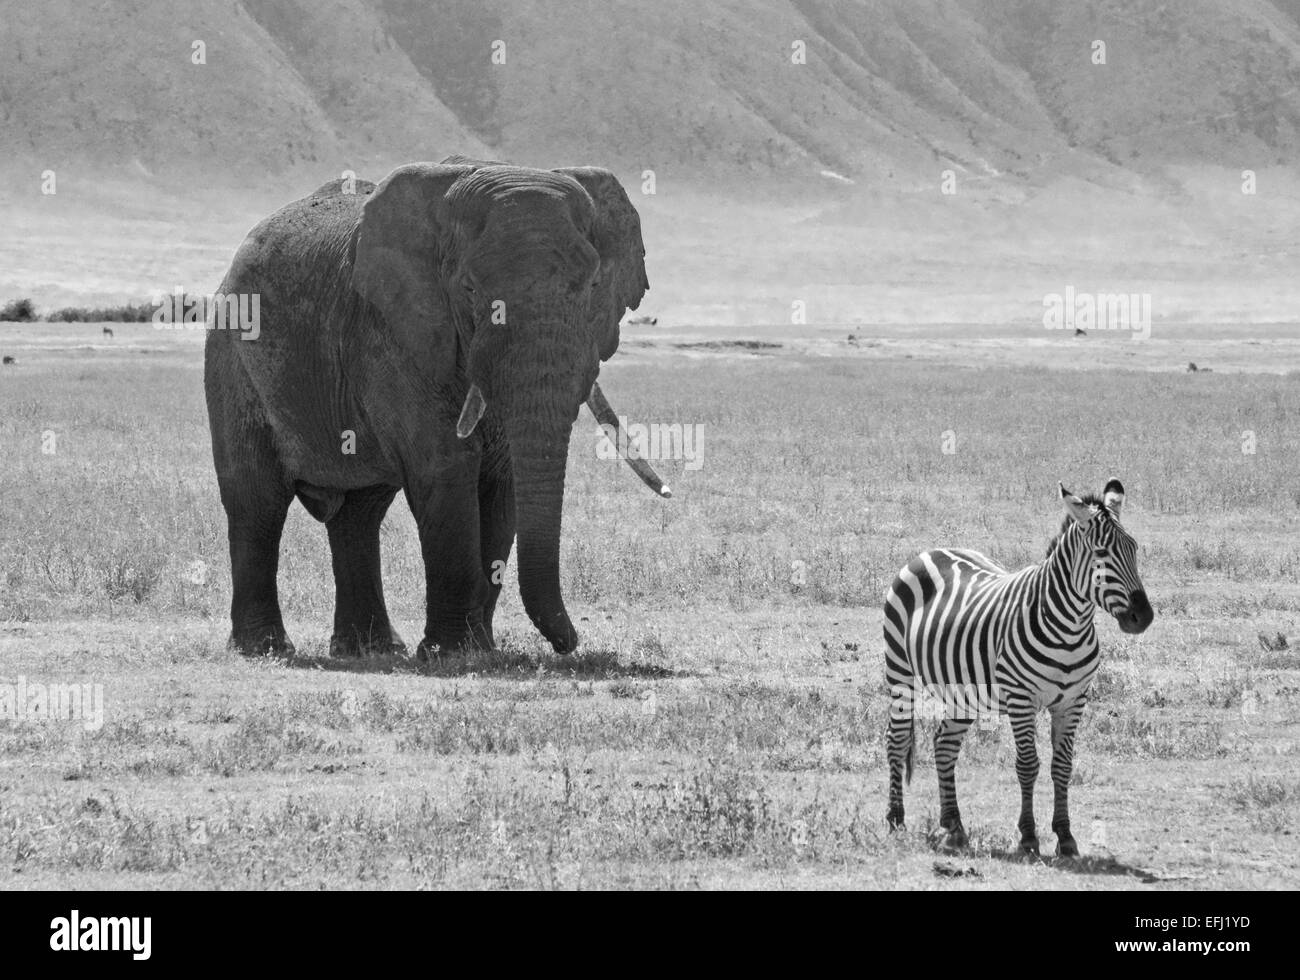 Imagen en blanco y negro de un elefante africano, Loxodonta africana, detrás de una llanura común, zebra Equus quagga, en Ngorongoro Conse Foto de stock